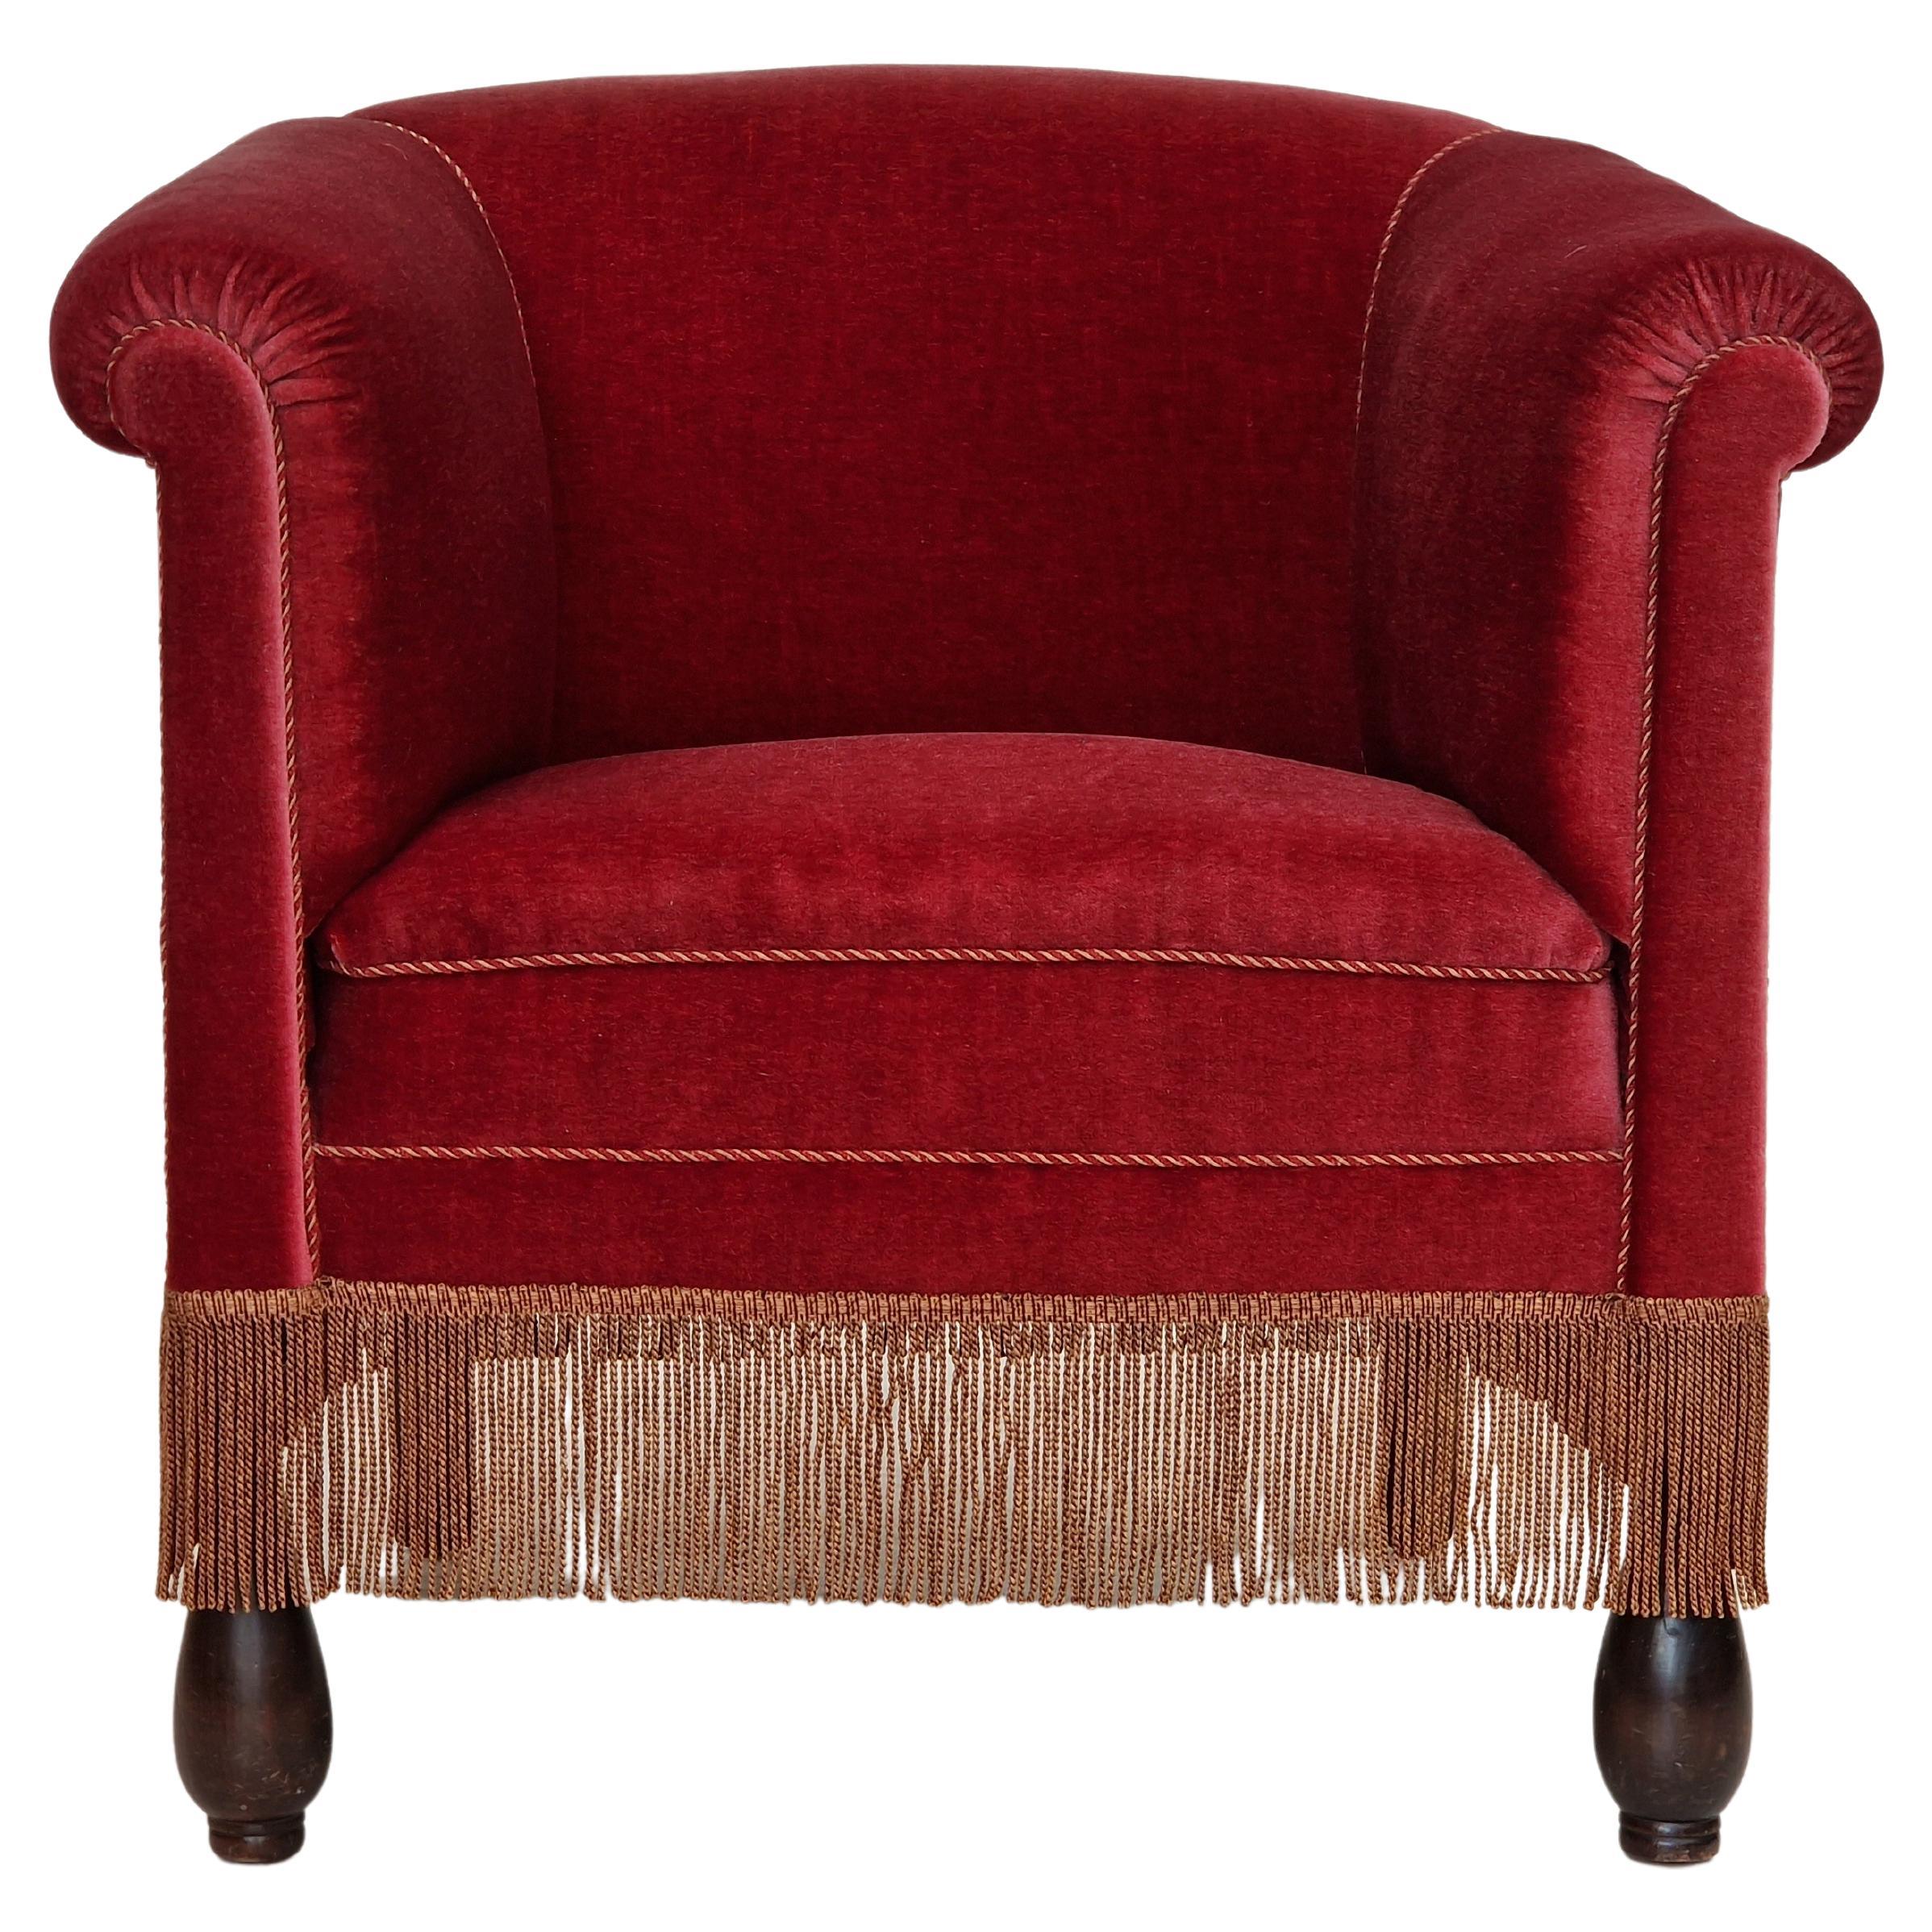 1960s, Danish Vintage Lounge Armchair in Cherry-Red Velvet